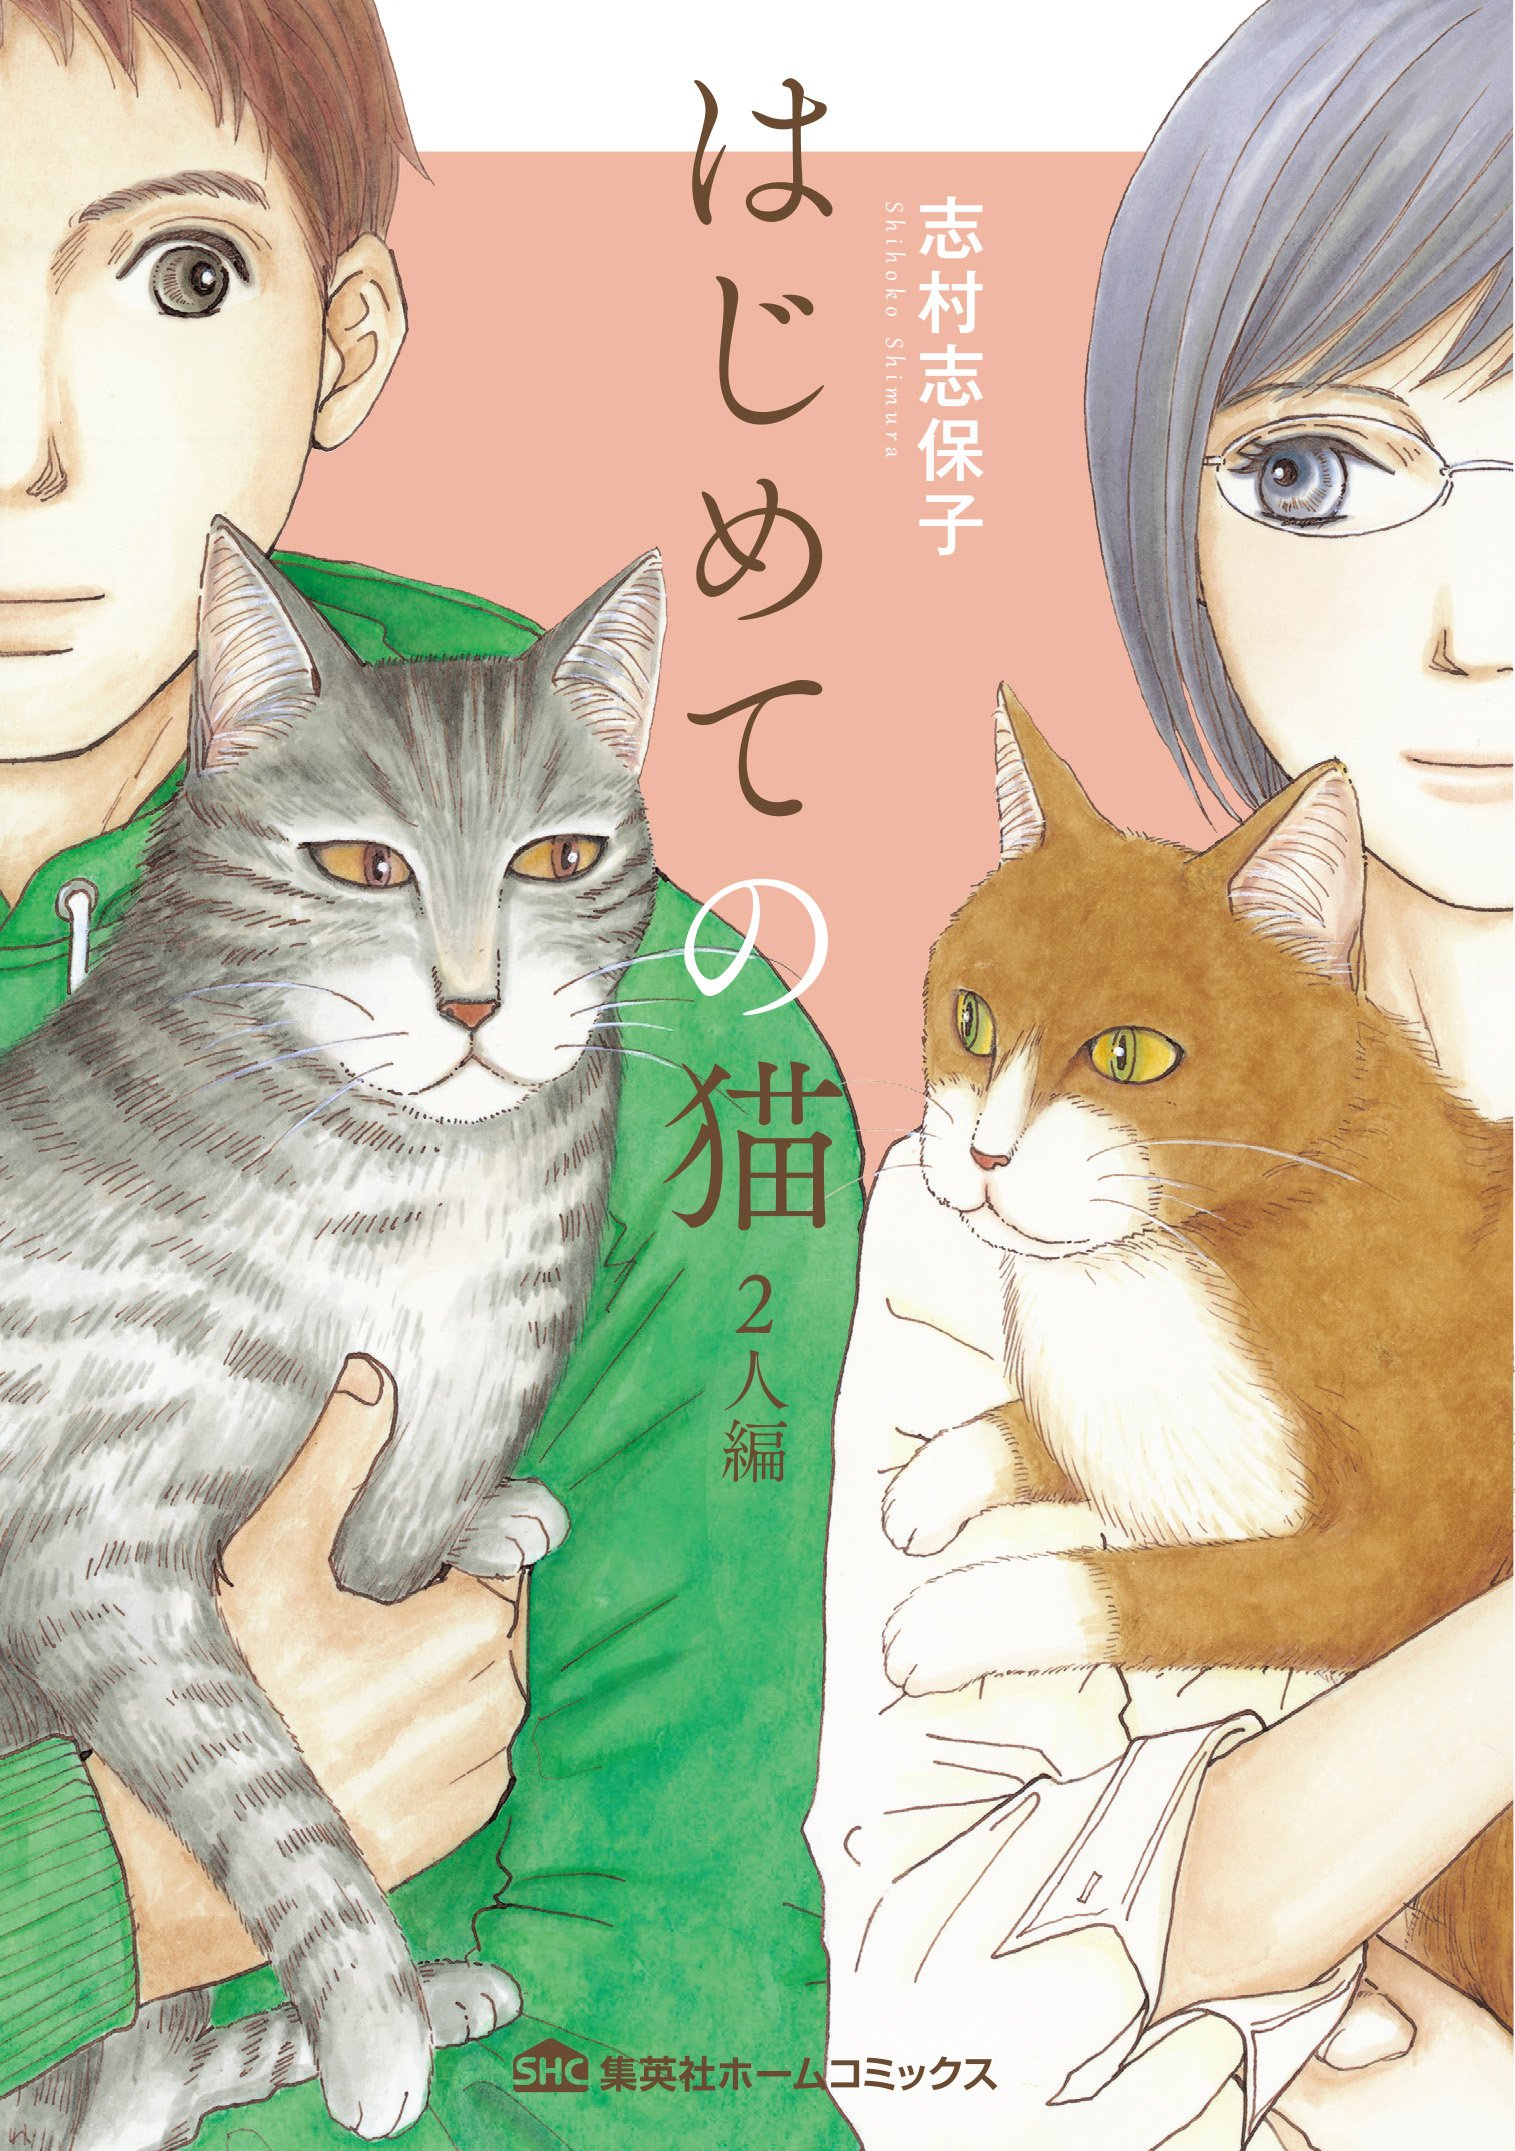 志村志保子 はじめての猫 2人編 発売中 Shimurashihoko Twitter